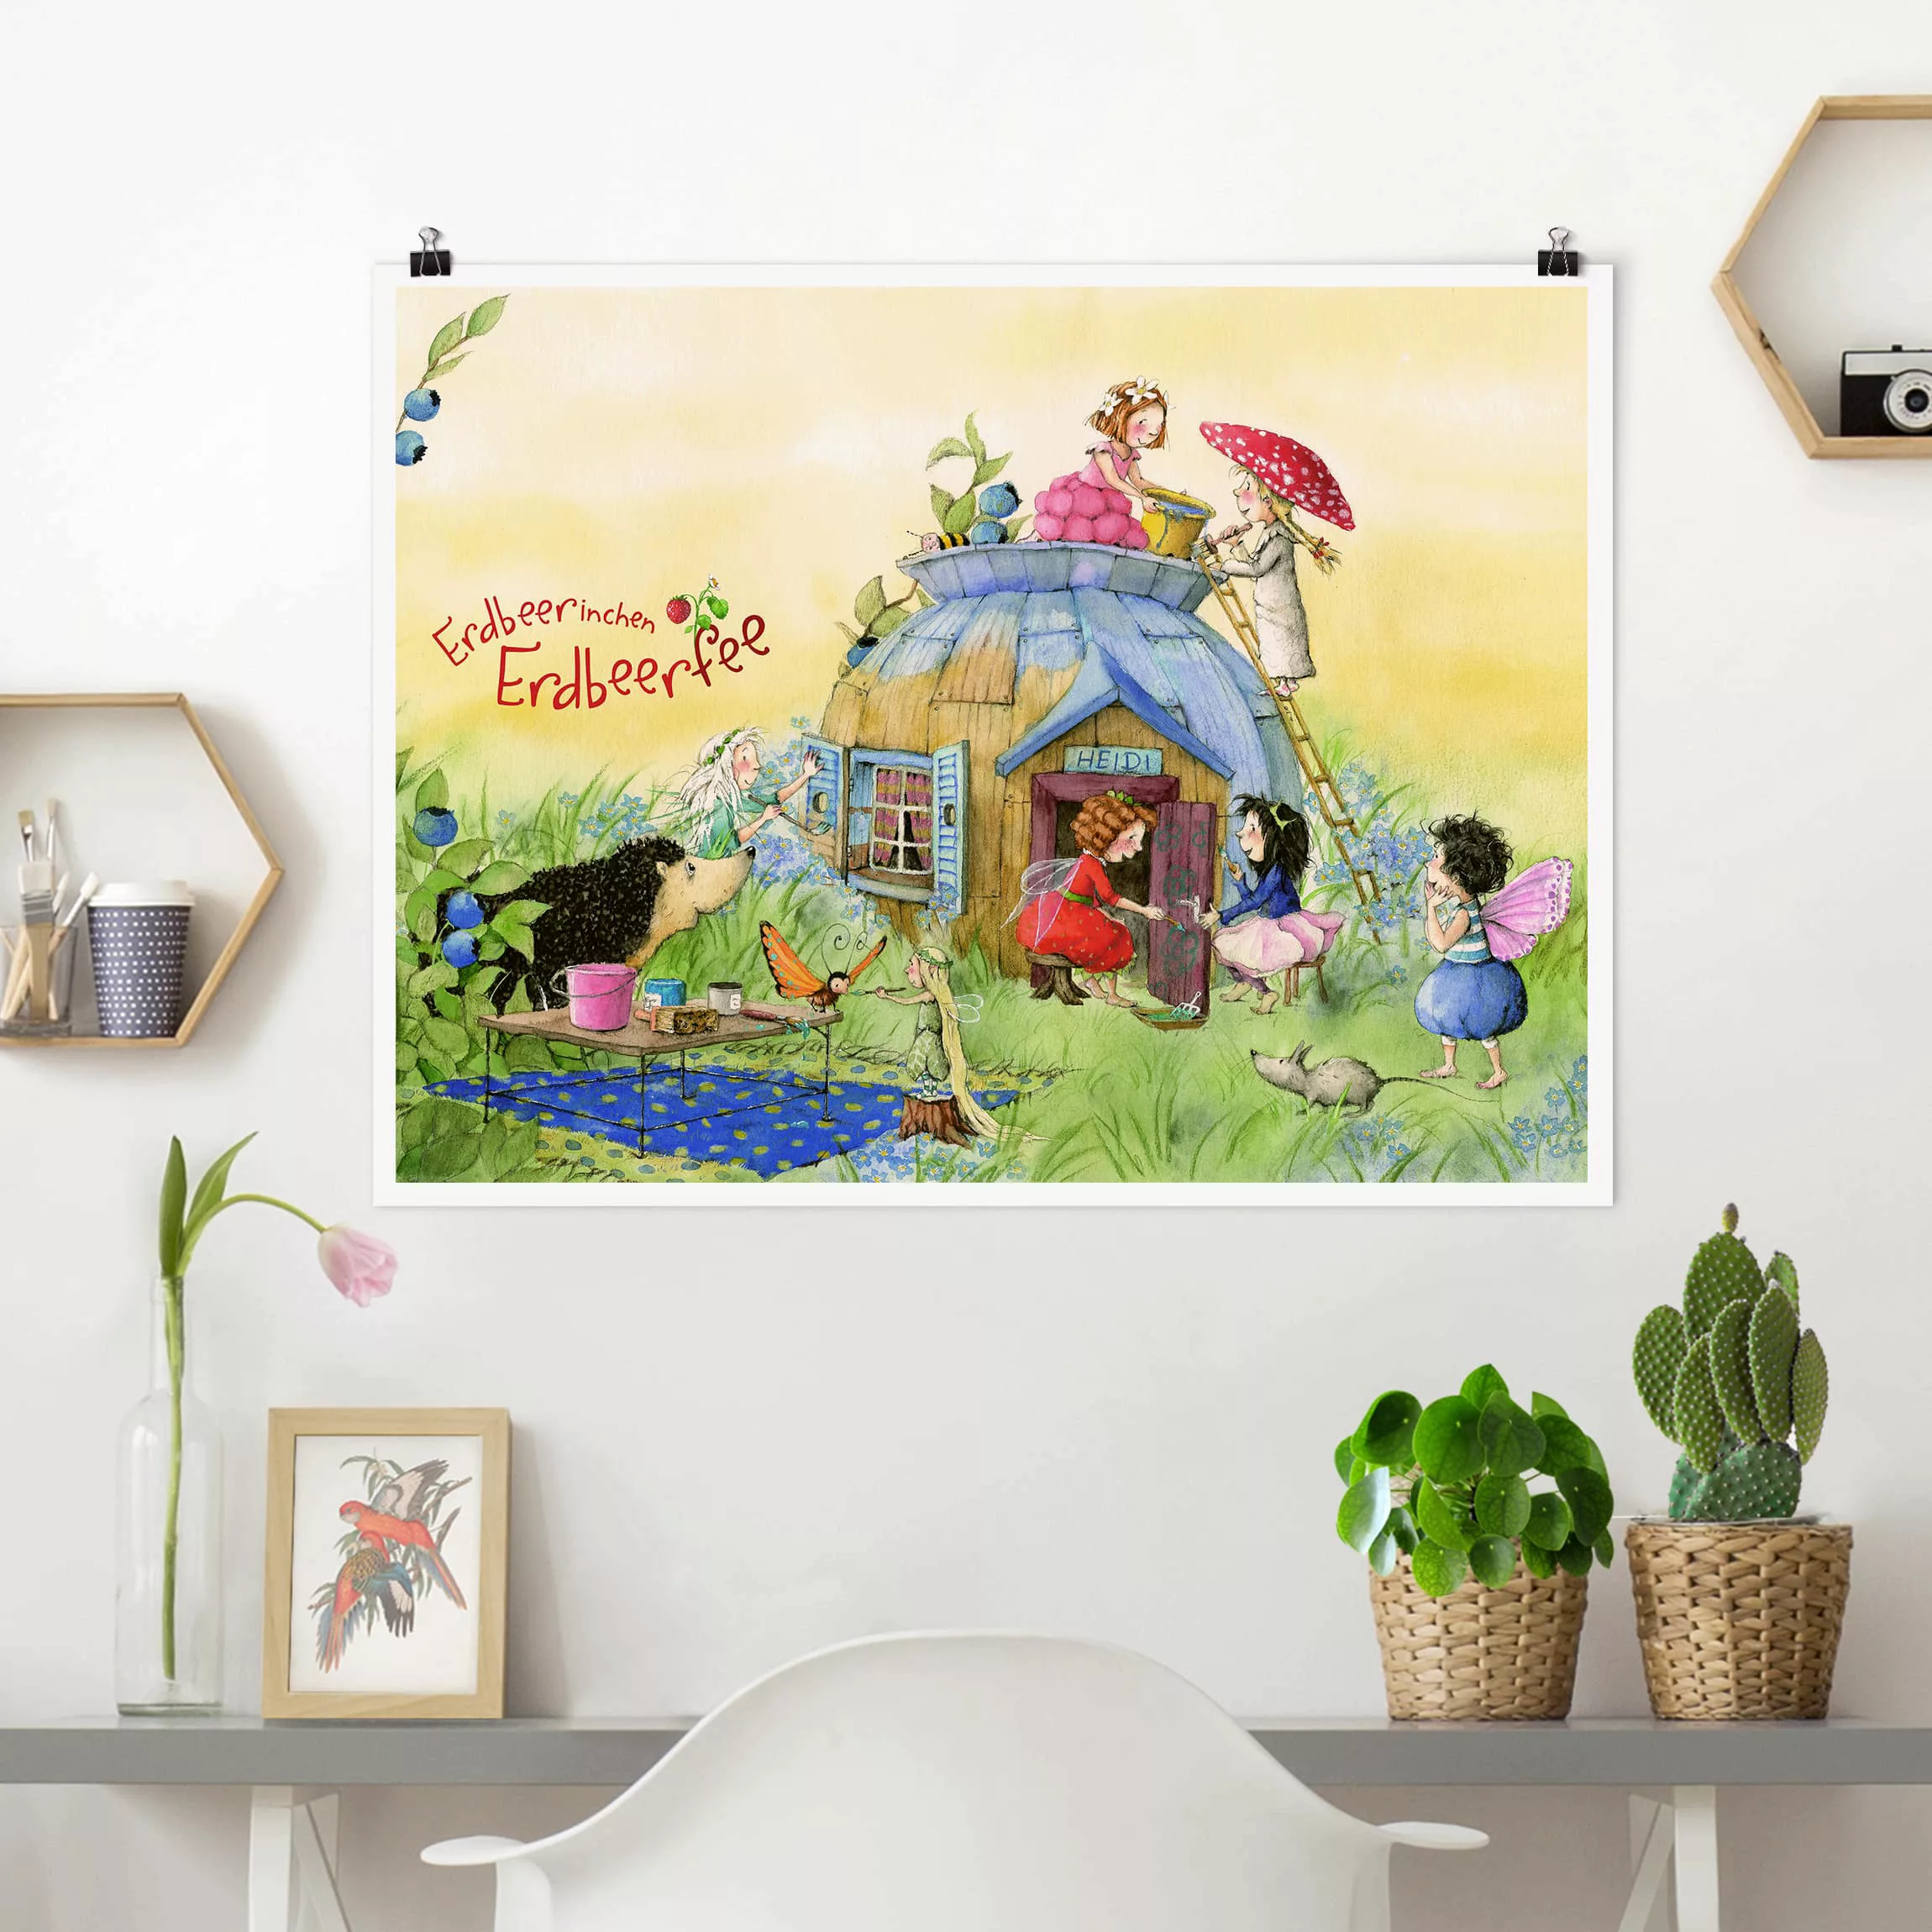 Poster Kinderzimmer - Querformat Erdbeerinchen Erdbeerfee - Bei Heidi günstig online kaufen